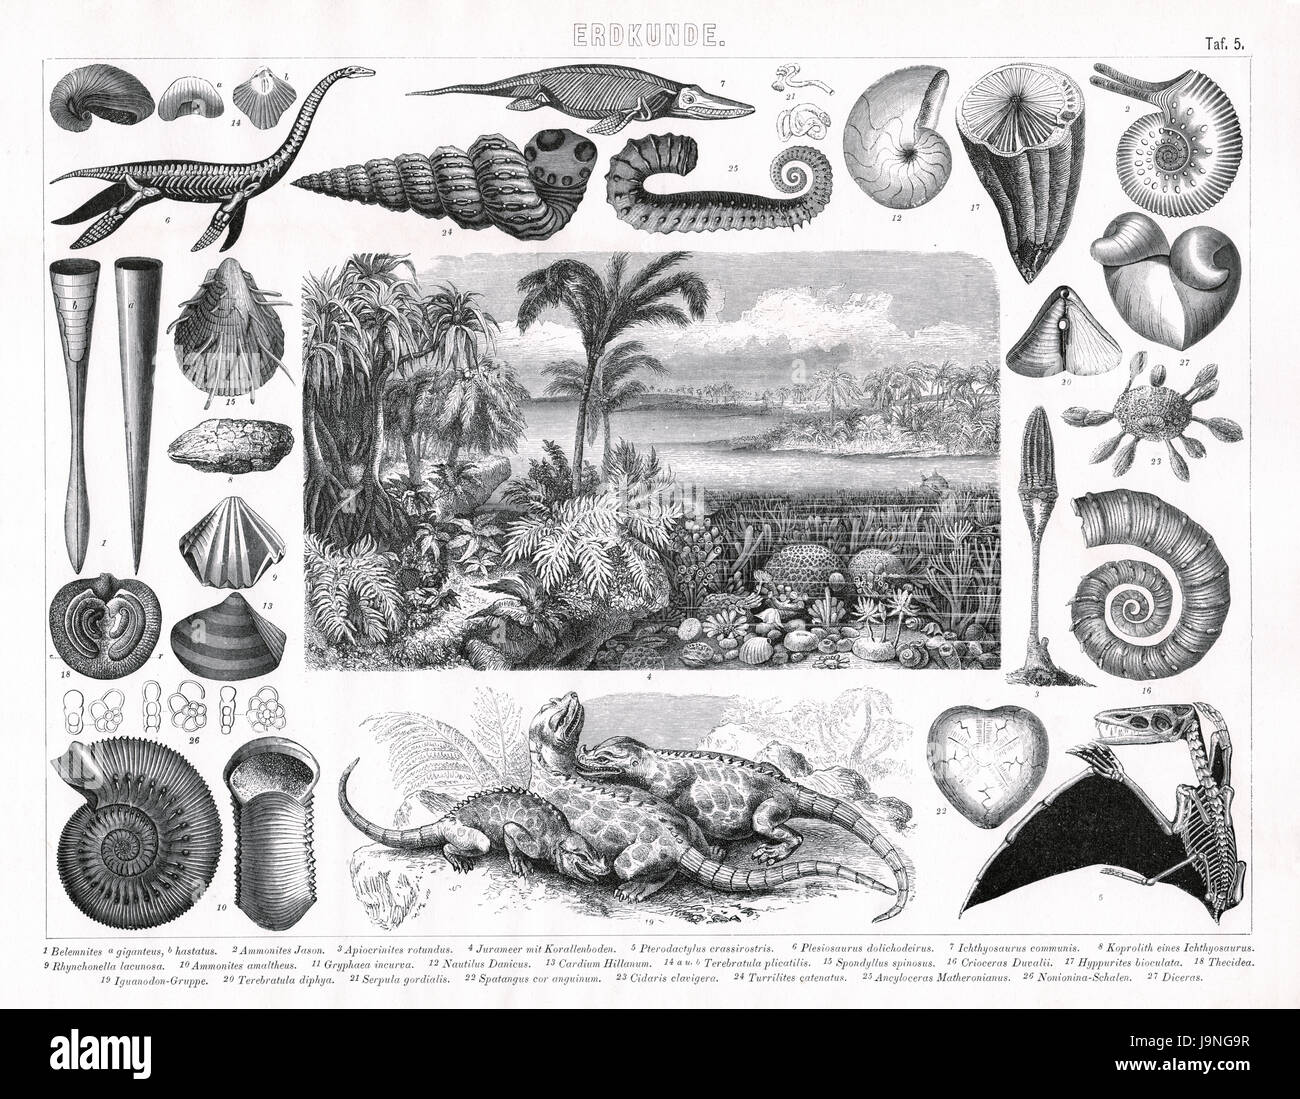 Pflanzen und Tieren aus dem Jura, Trias und verschiedenen anderen geologischen Zeiträumen. Stockfoto